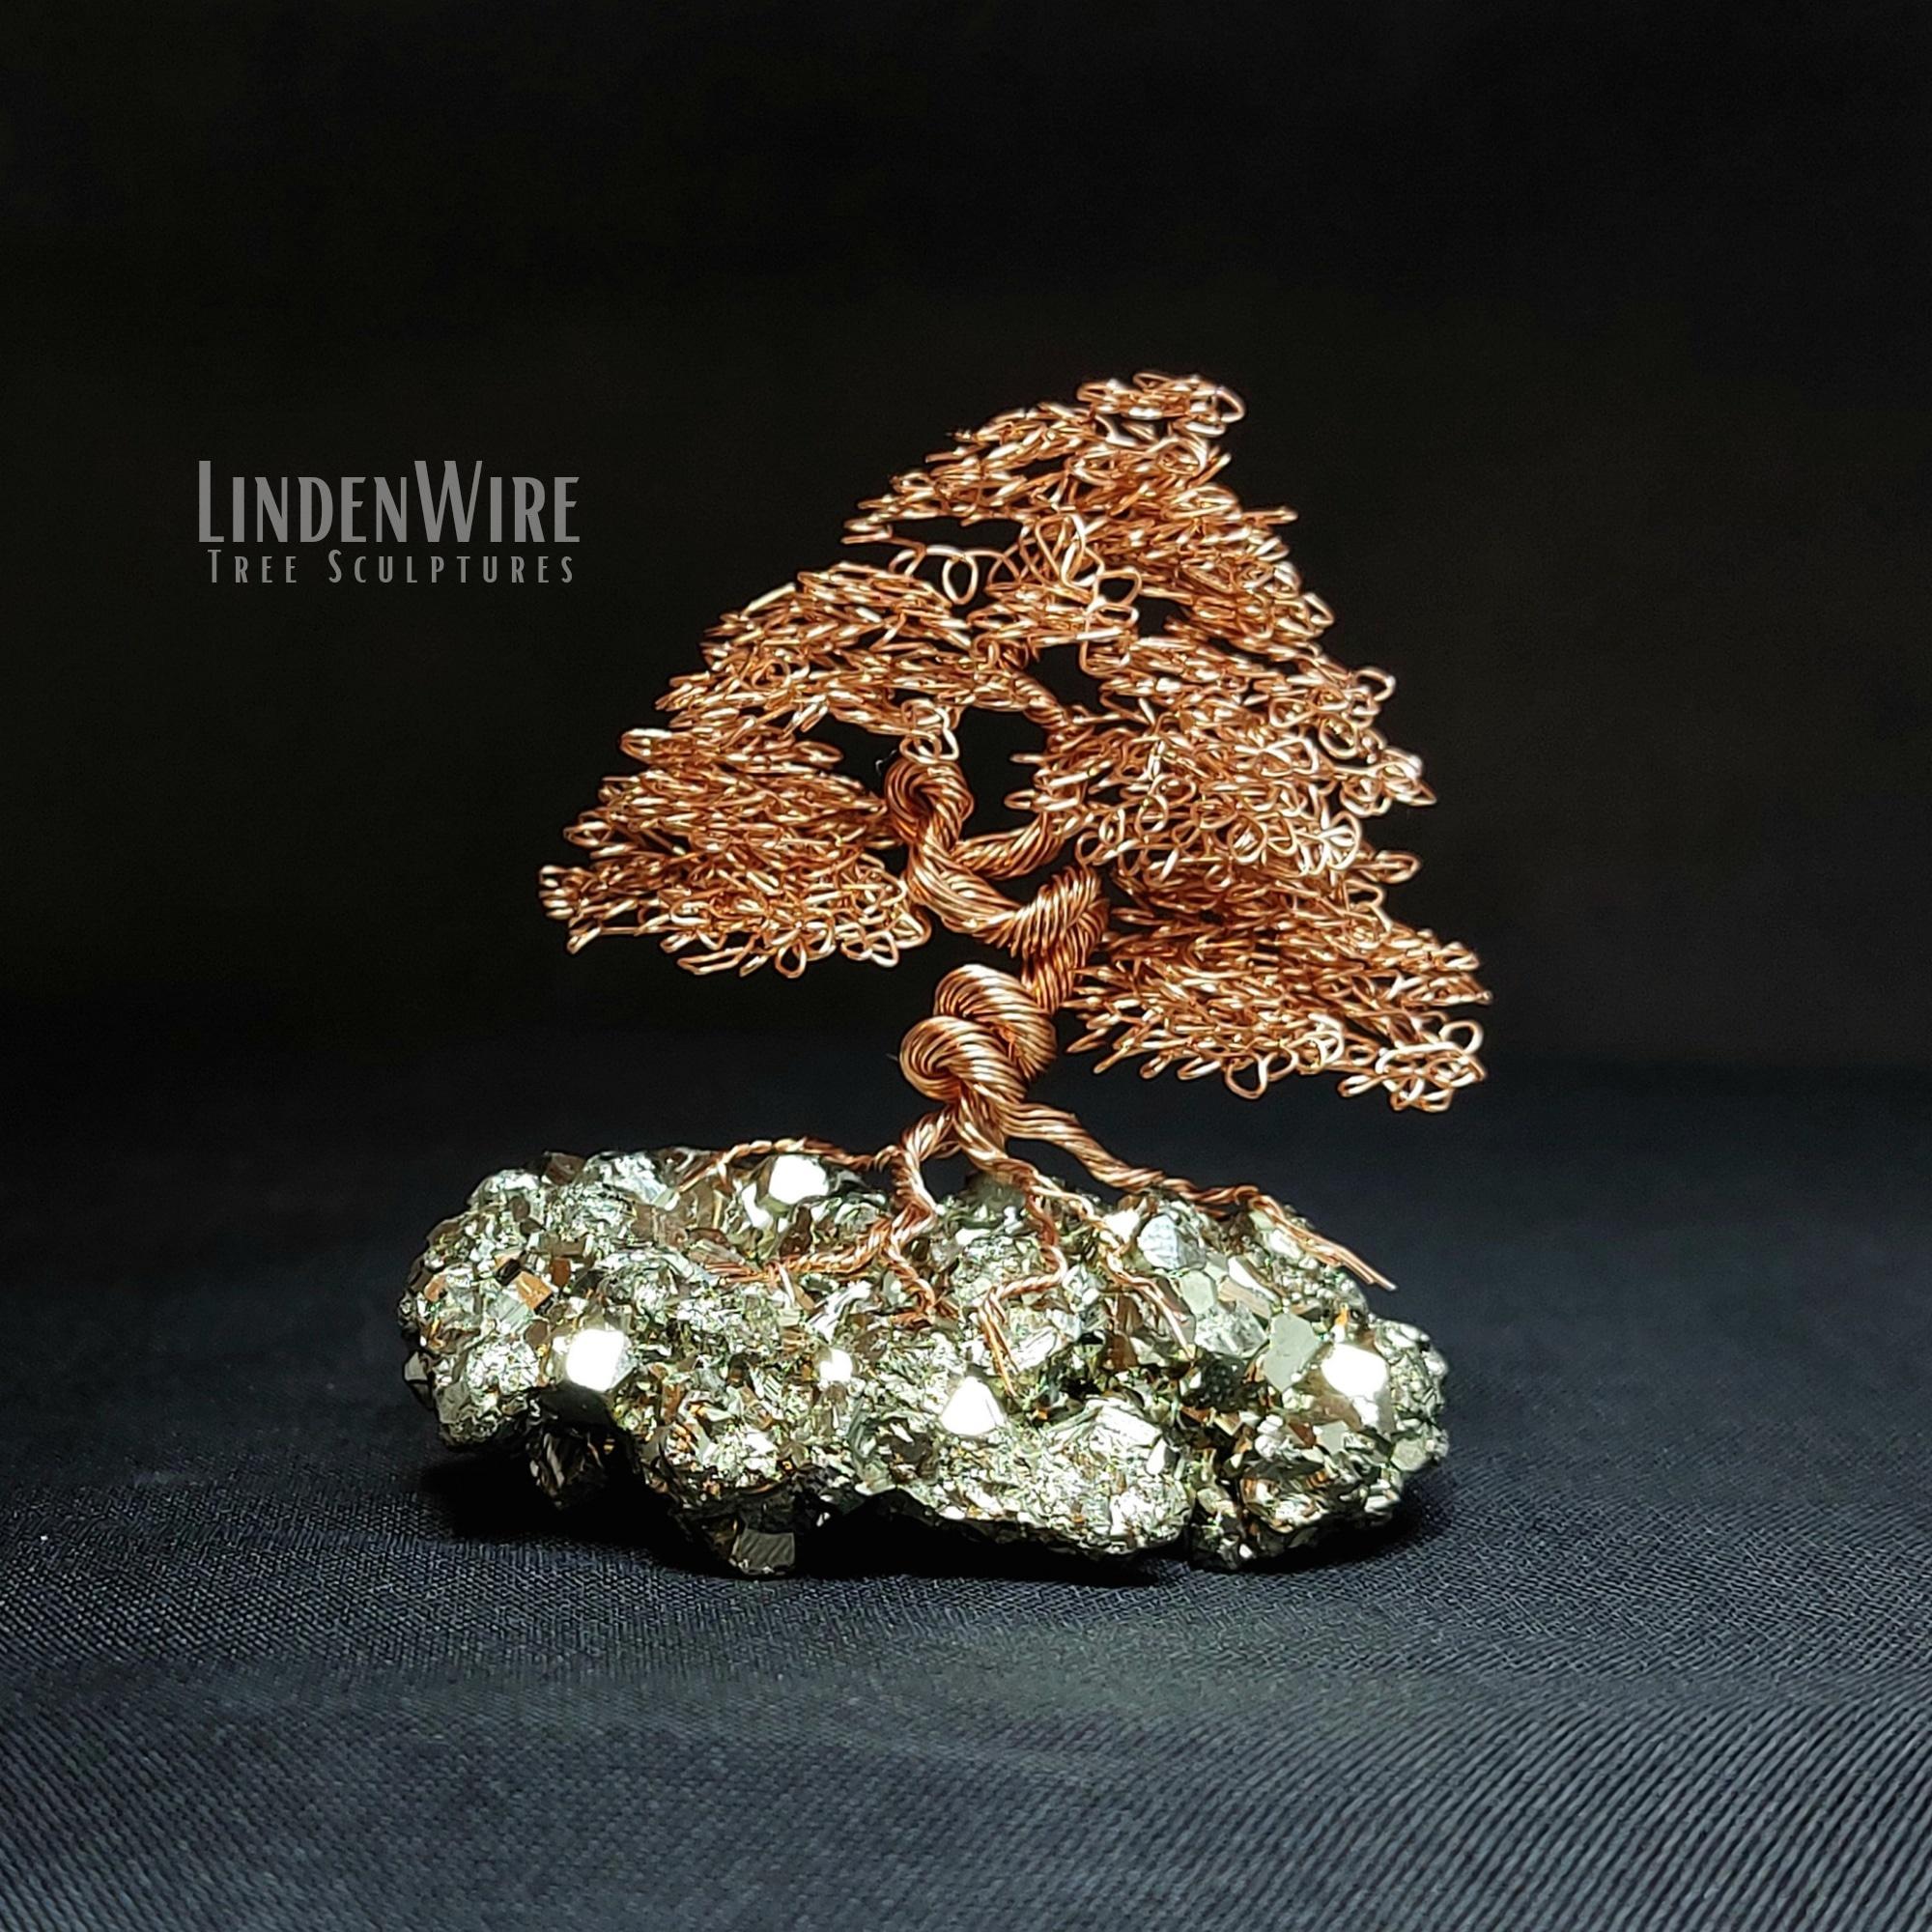 Pyrite injurious tree